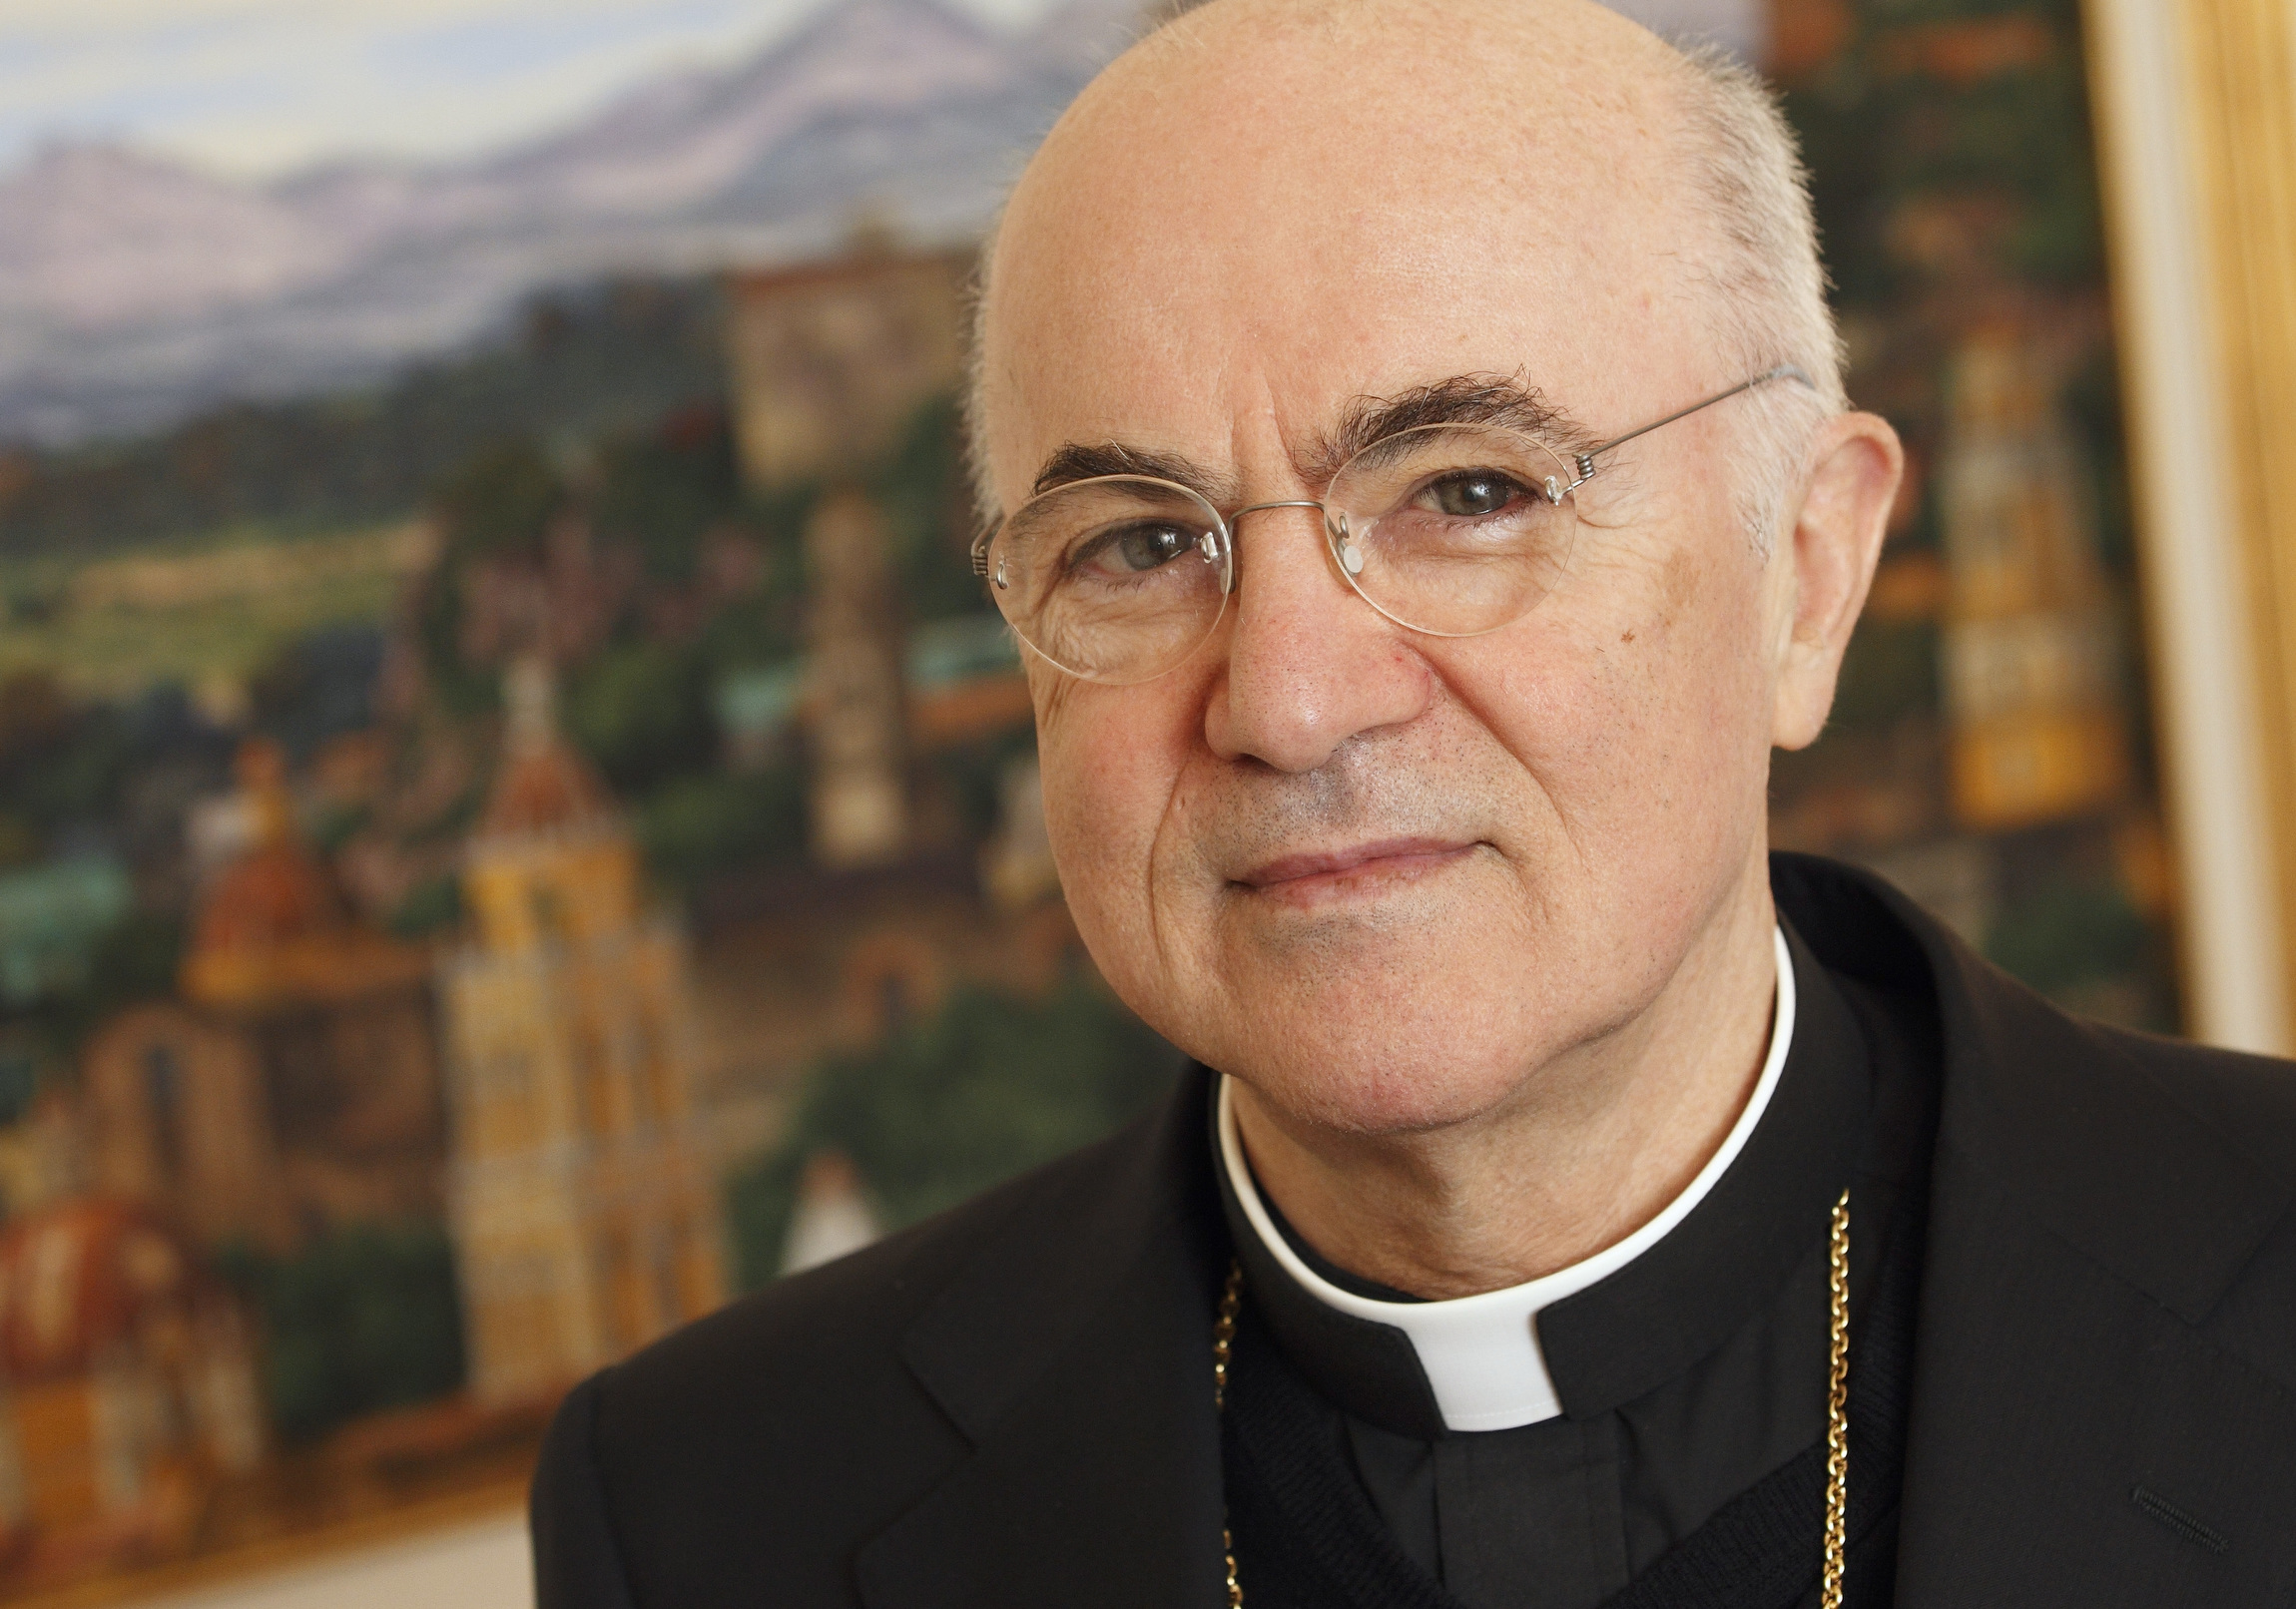 Archbishop Vigano